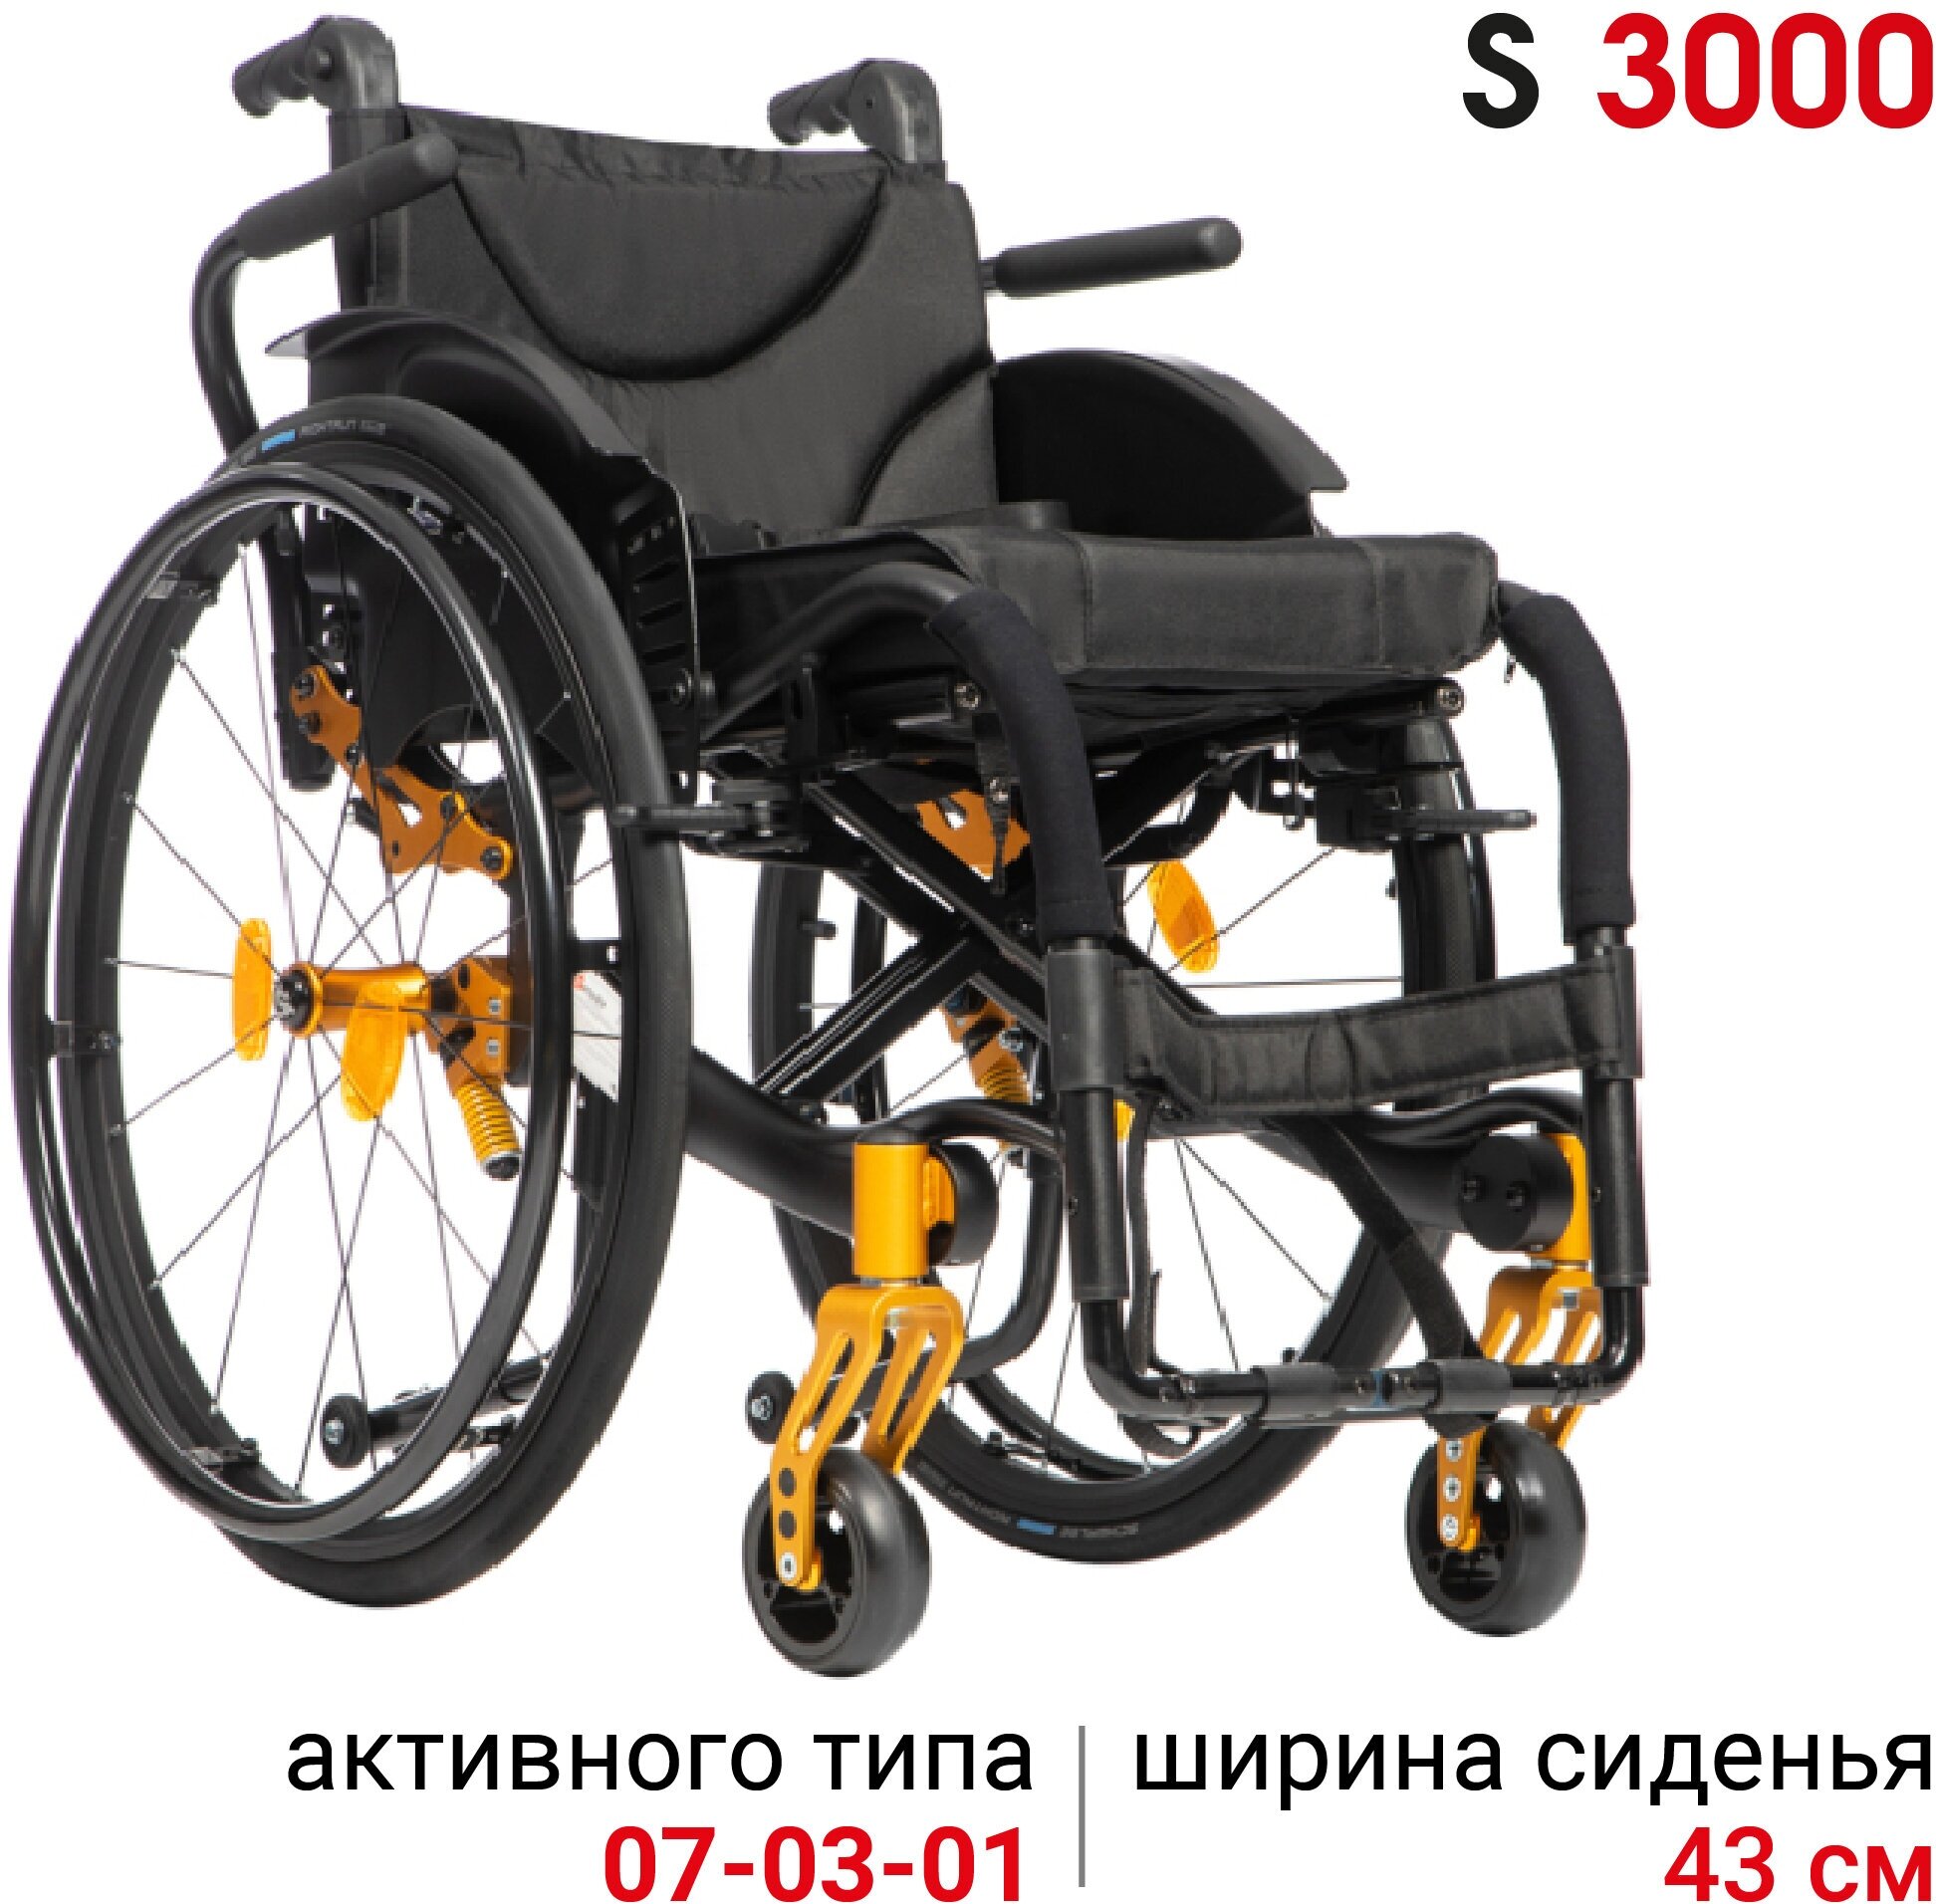 Кресло-коляска активная механическая Ortonica S 3000 43PU RR складная легкая ширина сиденья 43 см шины Schwalbe RightRun